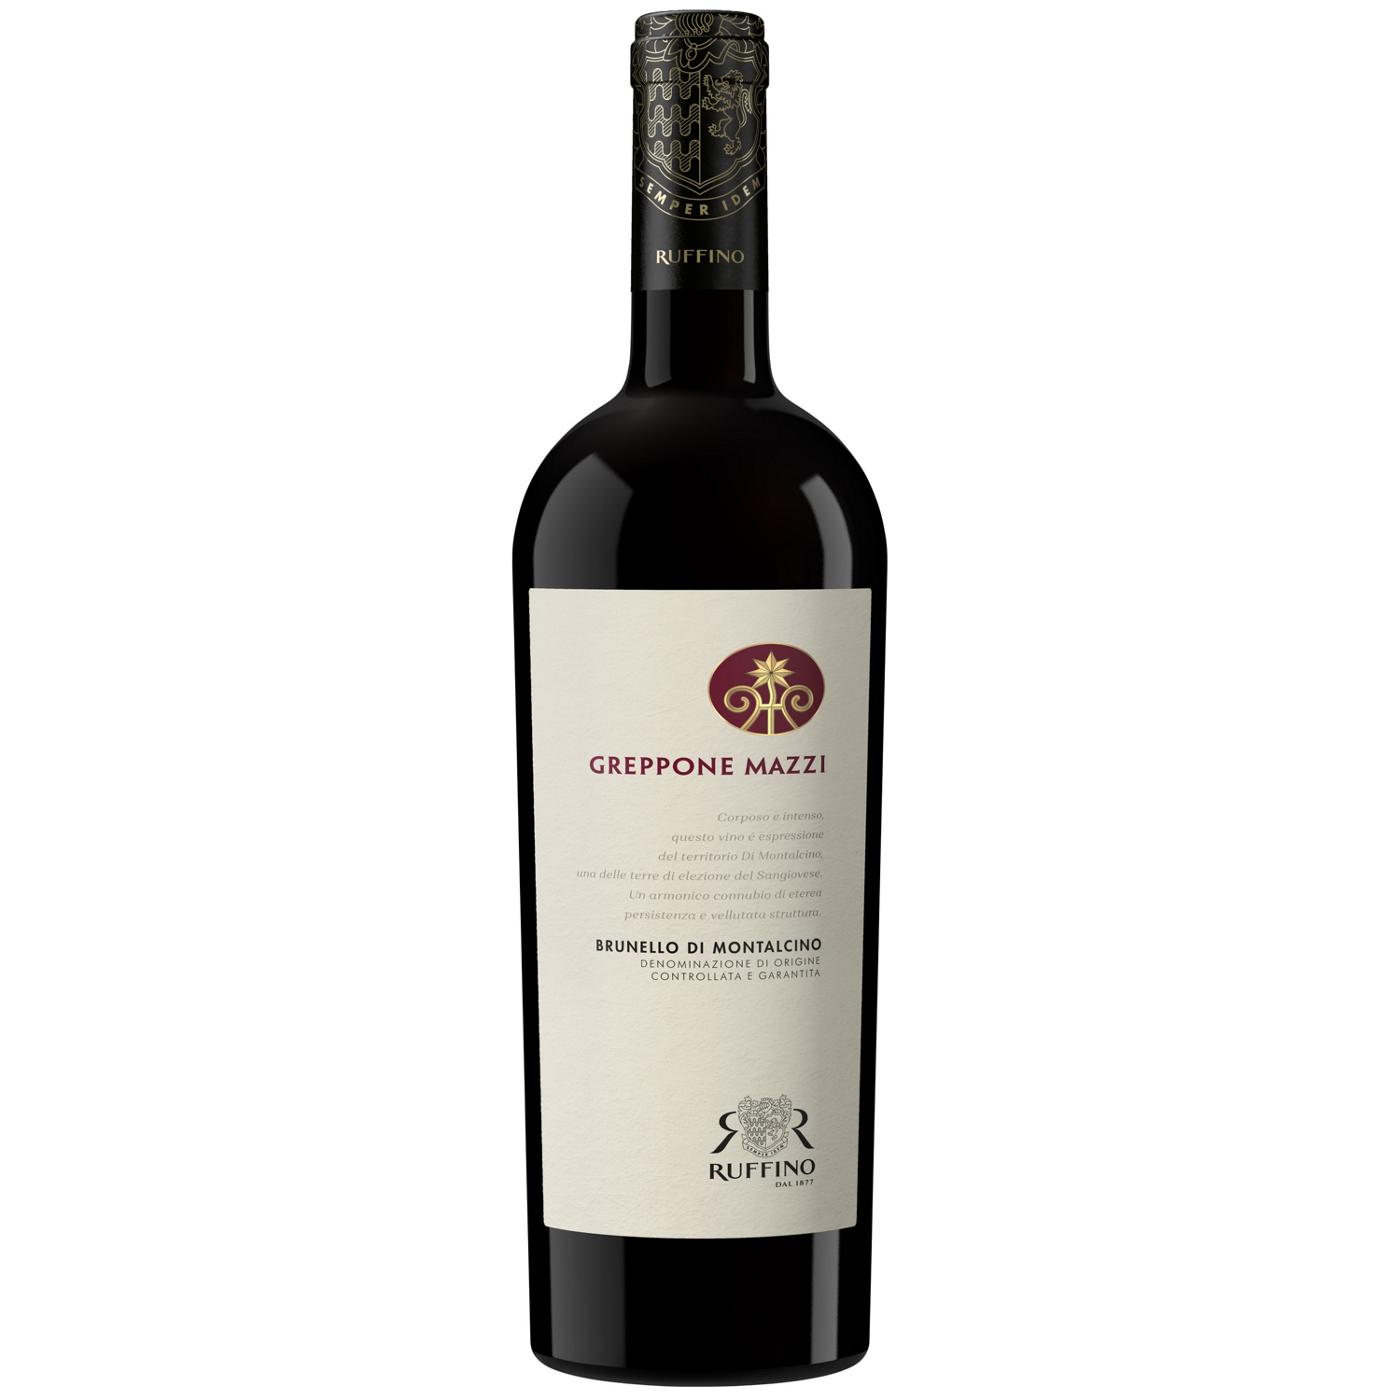 Ruffino Greppone Mazzi Brunello Di Montalcino DOCG Sangiovese Grosso, Italian Red Wine 750 mL Bottle; image 1 of 11